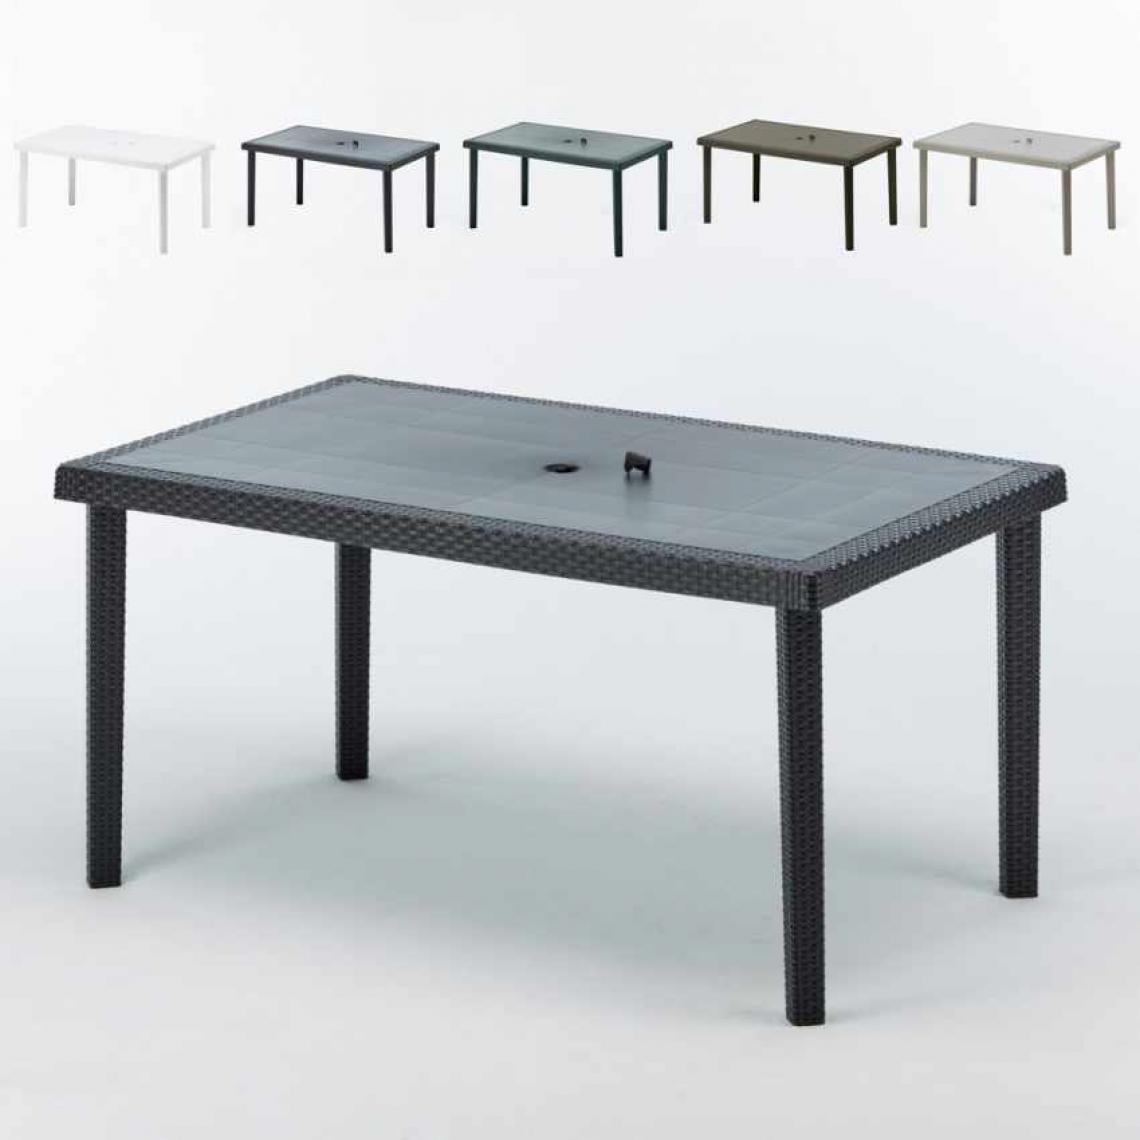 Grand Soleil - 12 Tables de jardin rectangulaire en poly-rotin bar café bistrot 150x90, Couleur: Noir - Tables de jardin